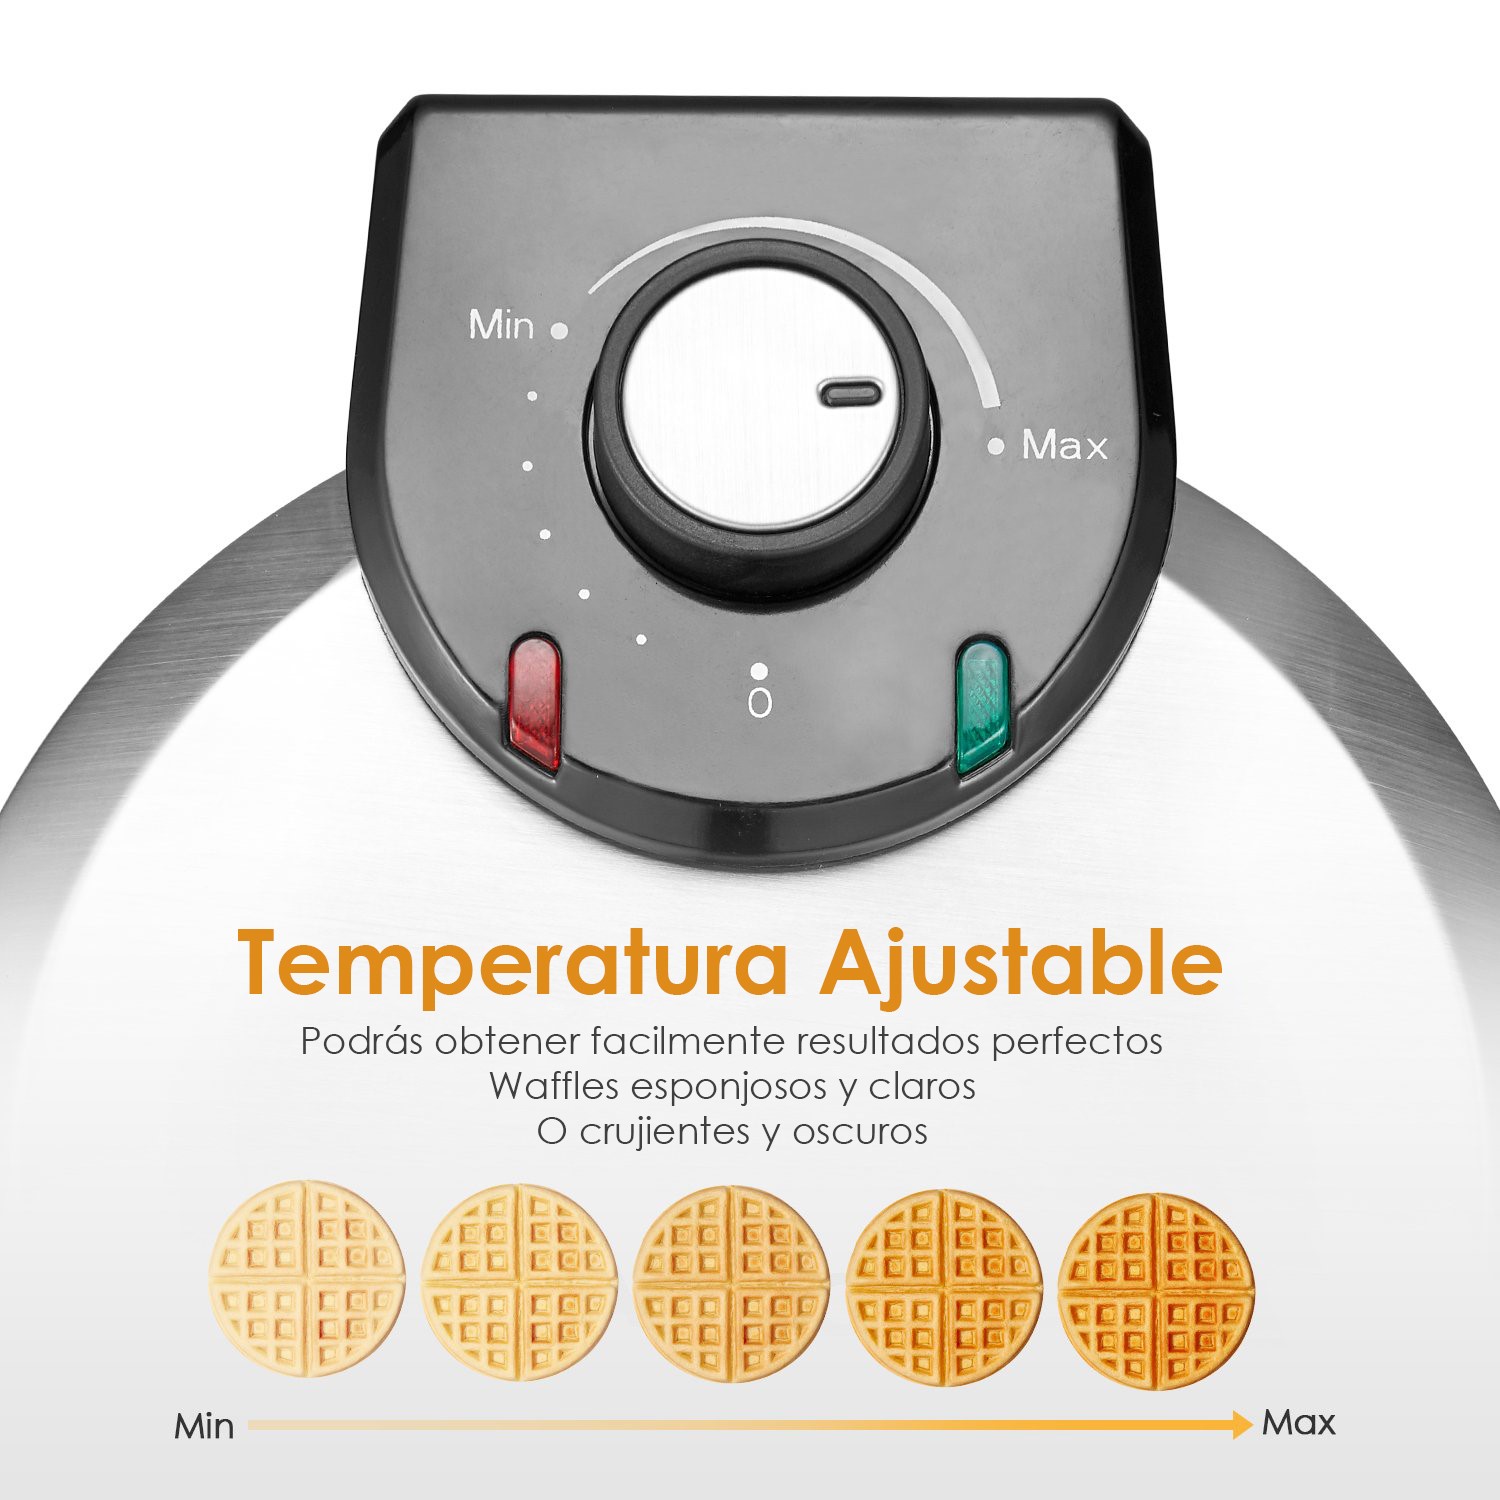 Waflera Circular Aicok SW-295 10 Temperaturas